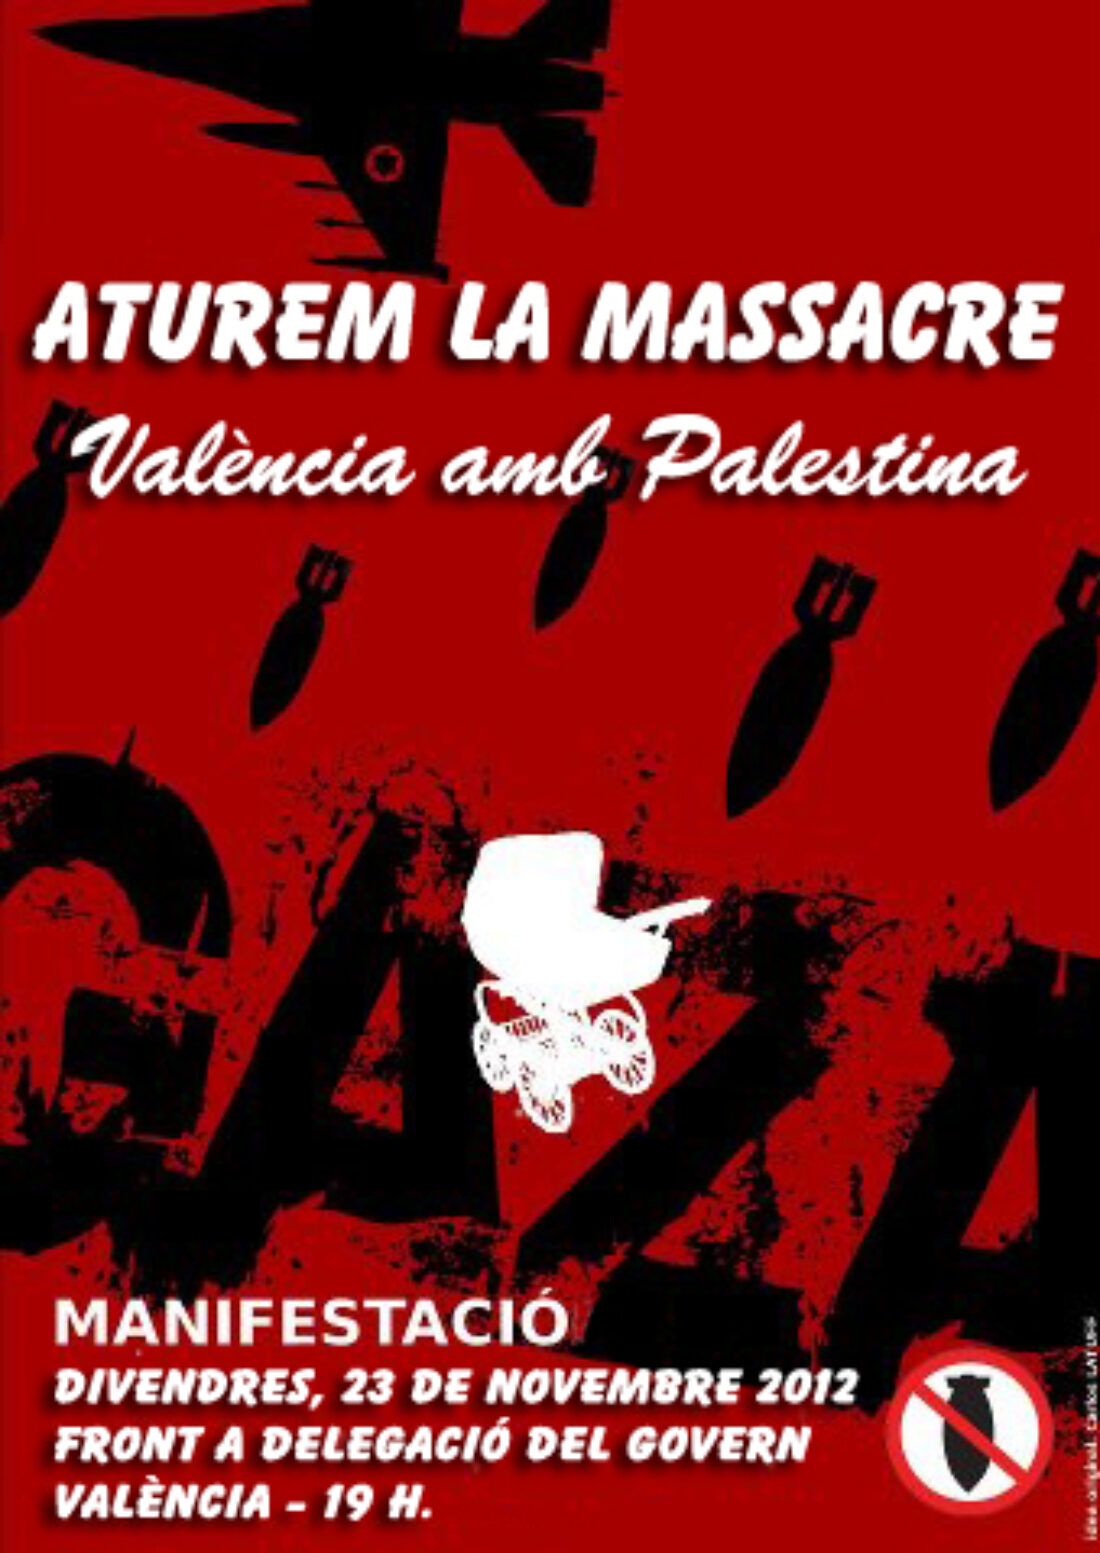 Paremos la masacre: Manifestación en Valencia por Palestina